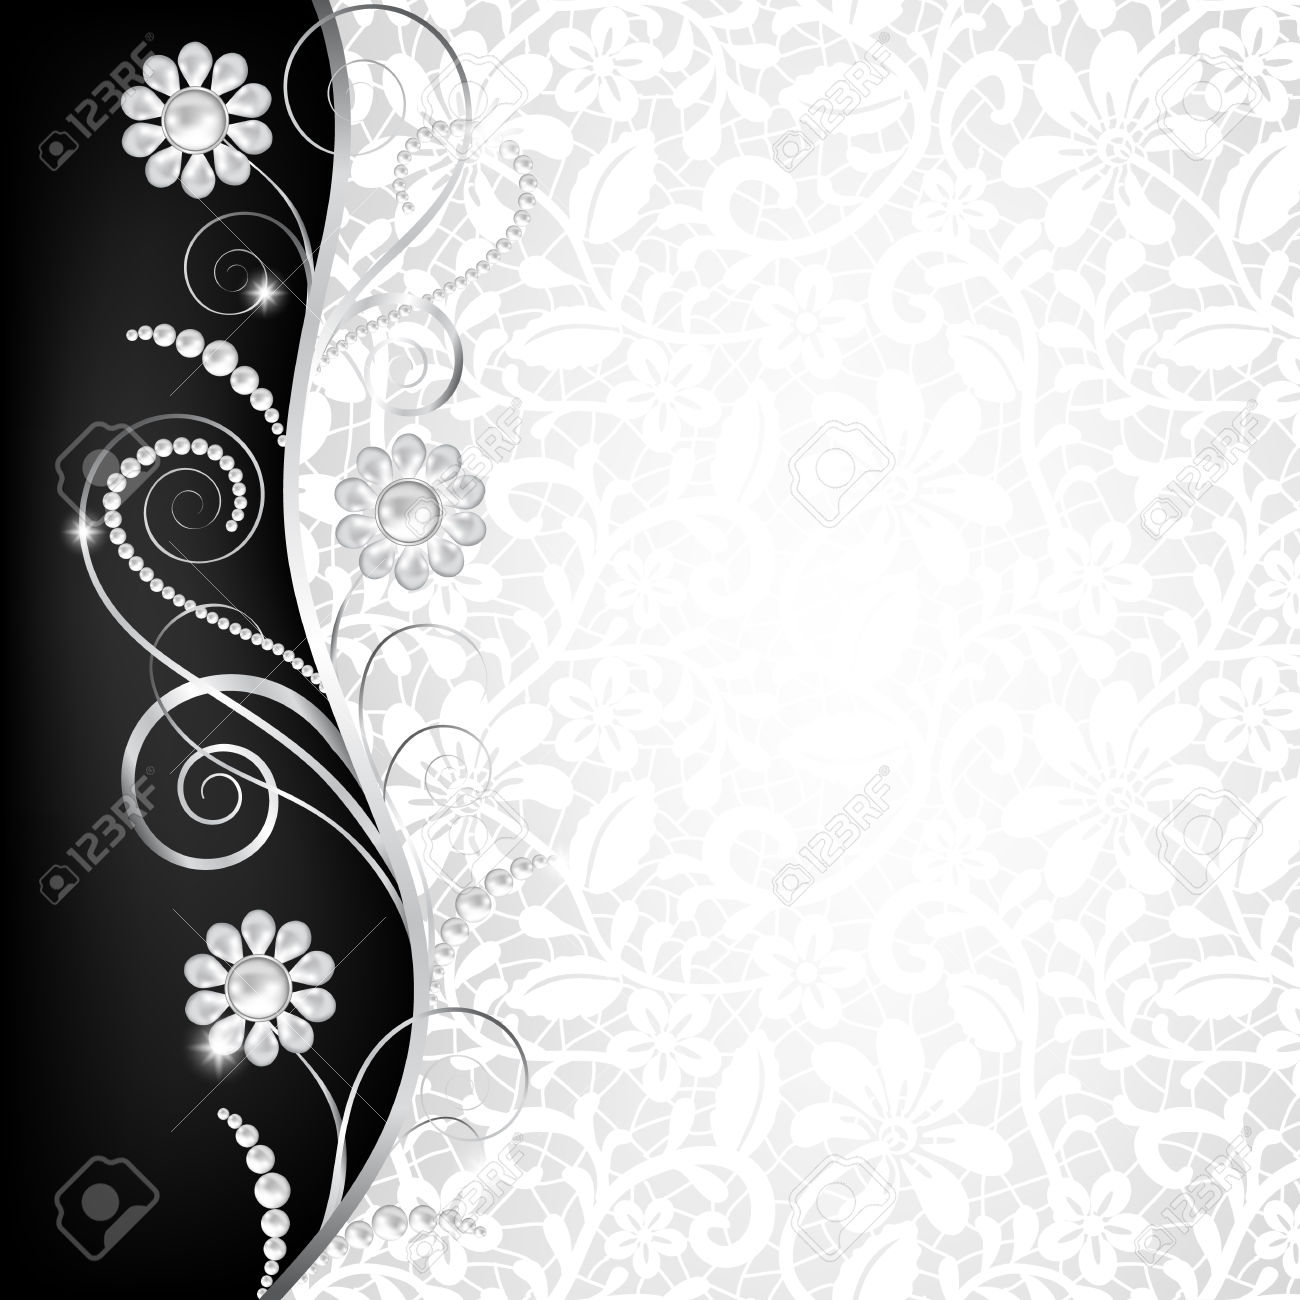 vip fondo de pantalla hd,texto,modelo,en blanco y negro,diseño,diseño floral